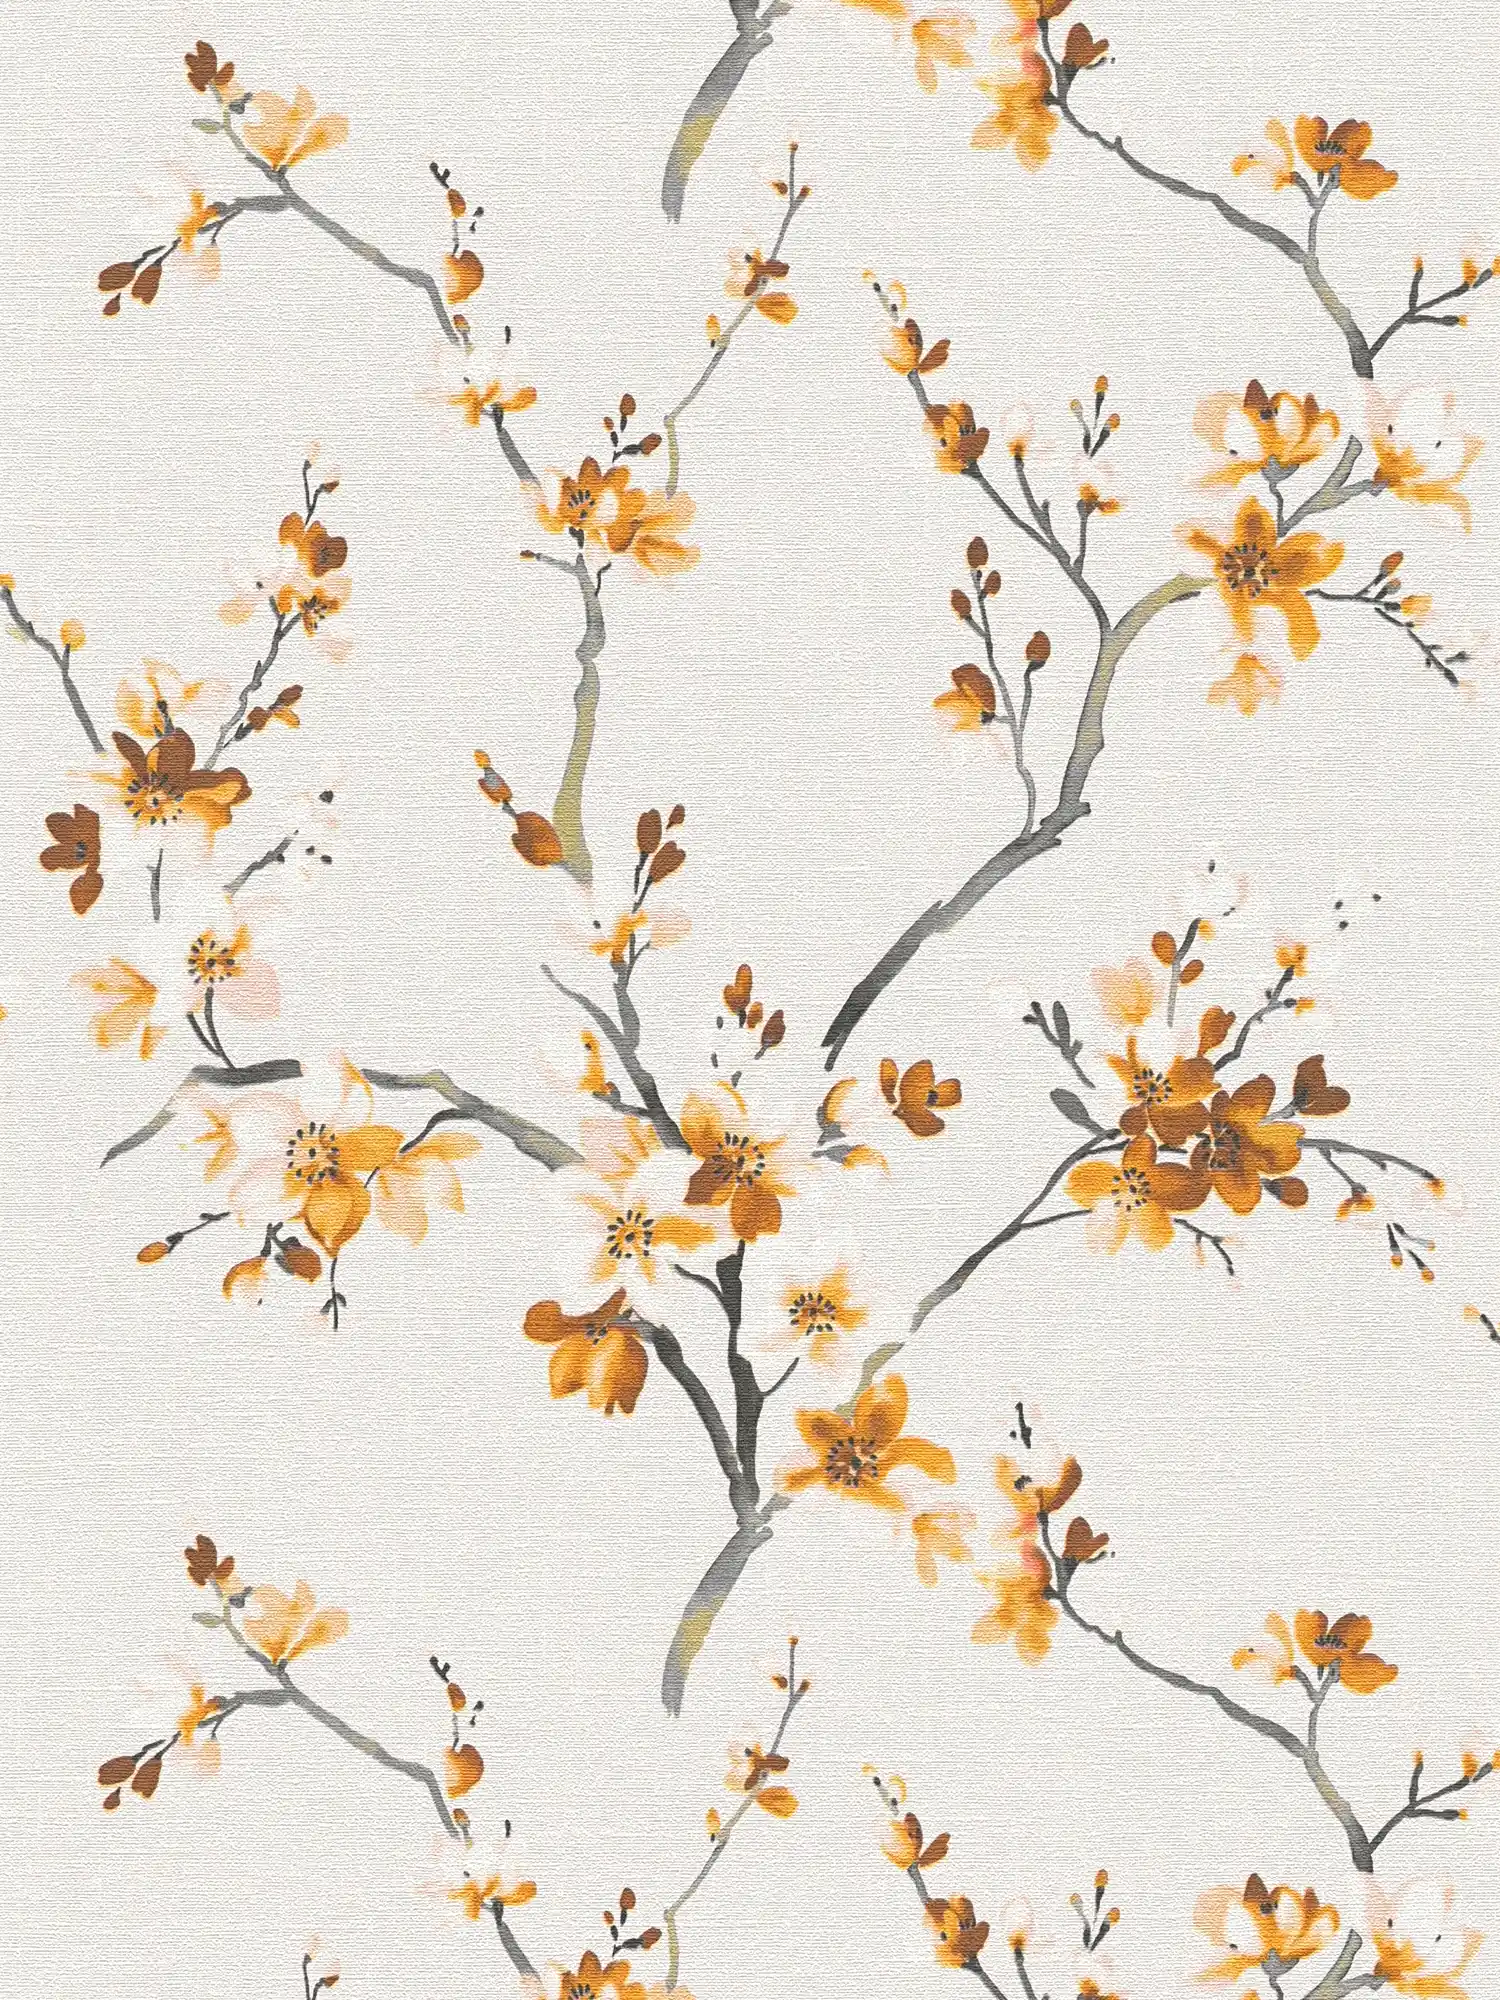 Papel Pintado Floral Patrón de flores amarillo mostaza en estilo acuarela
